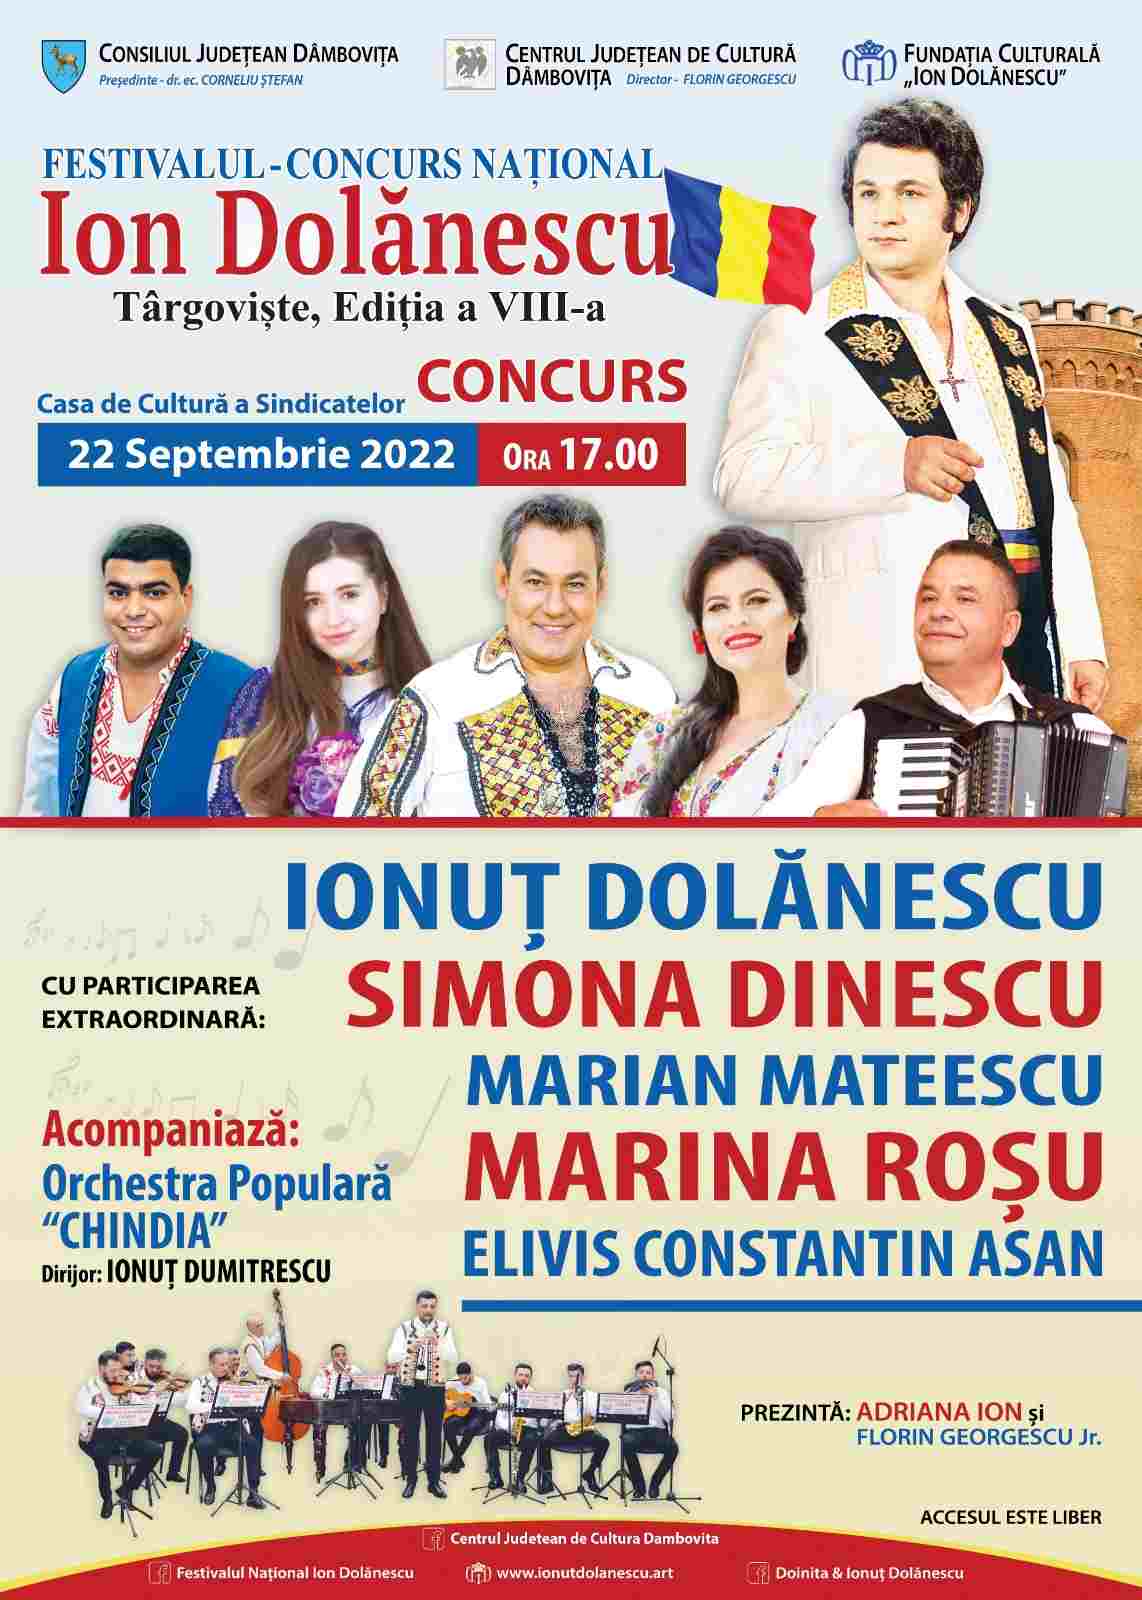  Festivalul – Concurs Naţional „Ion Dolănescu” se va desfășura la Casa de Cultură a Sindicatelor din municipiul Târgoviște